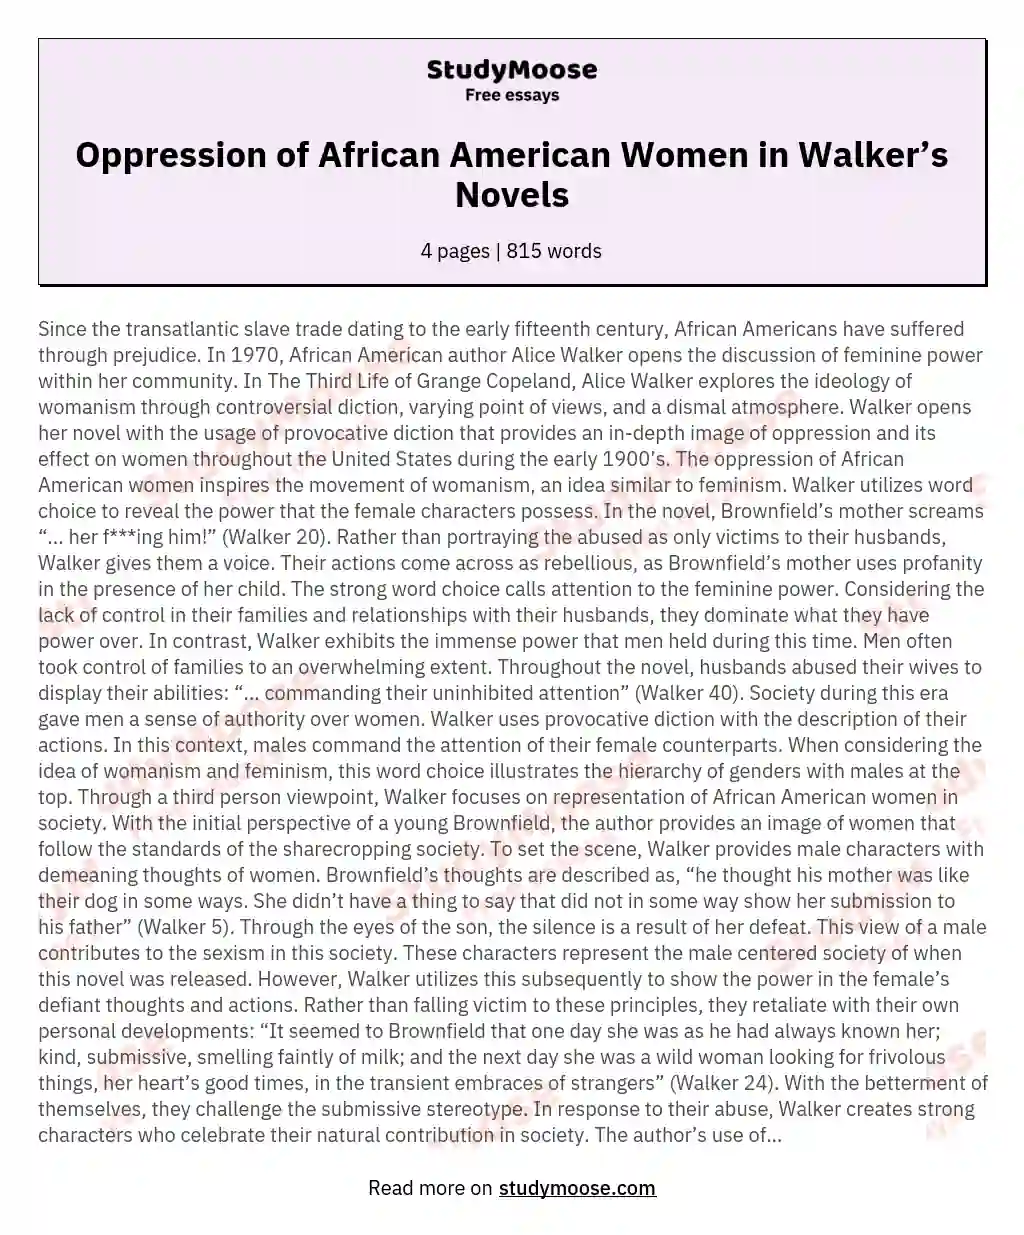 Oppression of African American Women in Walker’s Novels essay